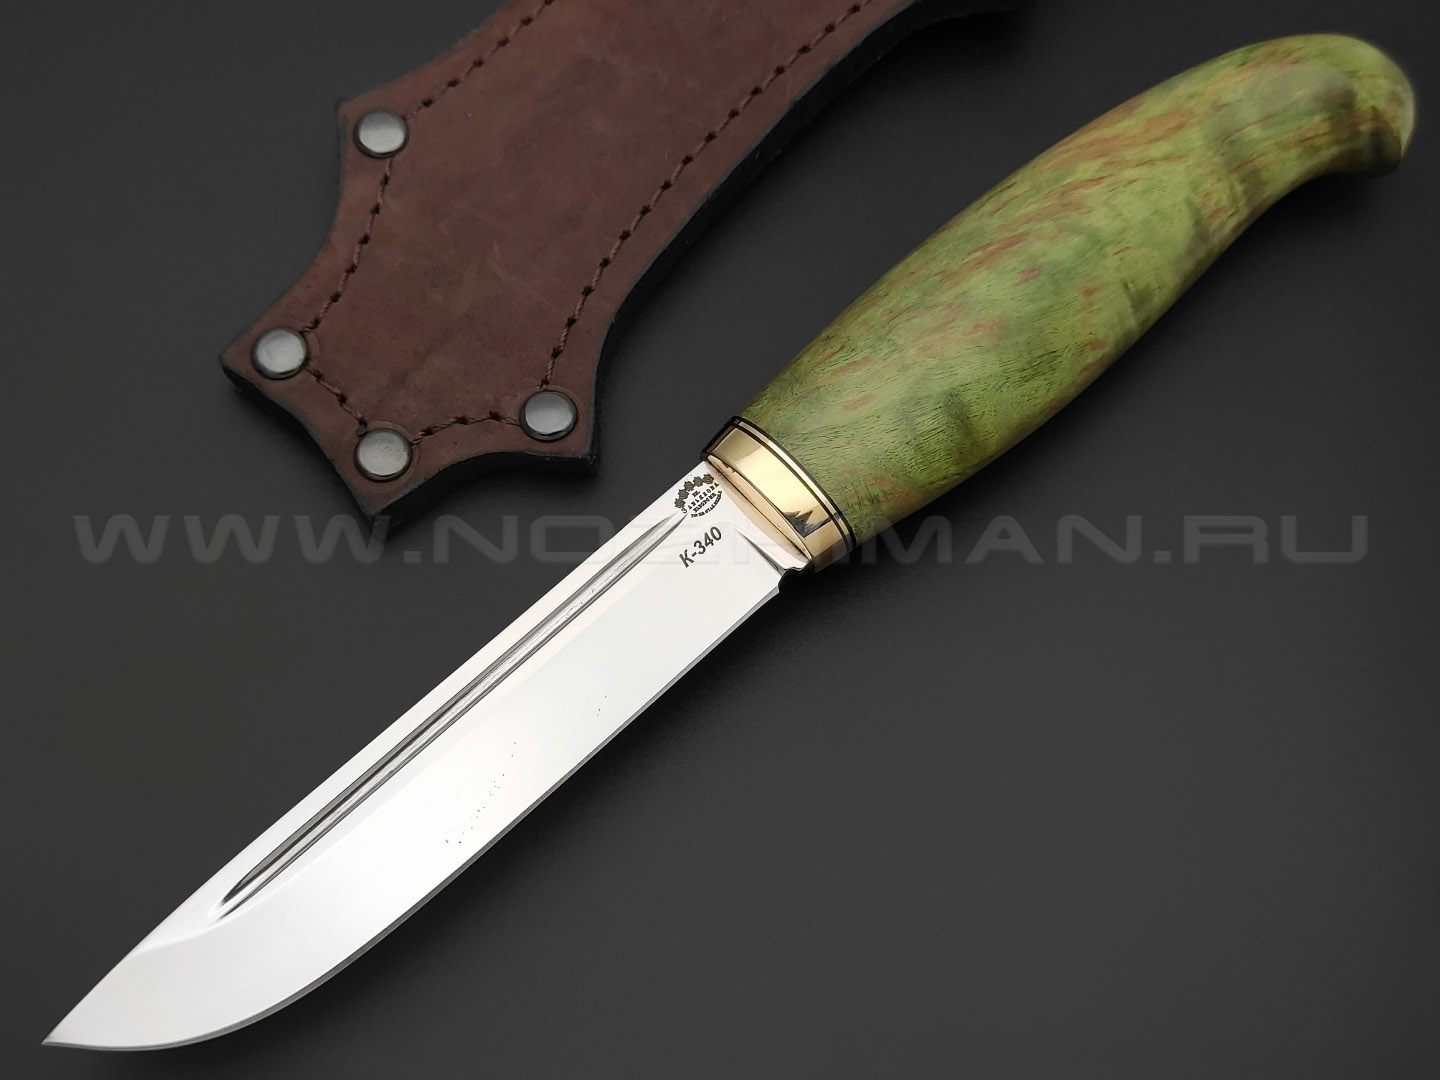 Товарищество Завьялова нож Финка-М сталь K340, рукоять Стаб. карельская береза зеленая, латунь